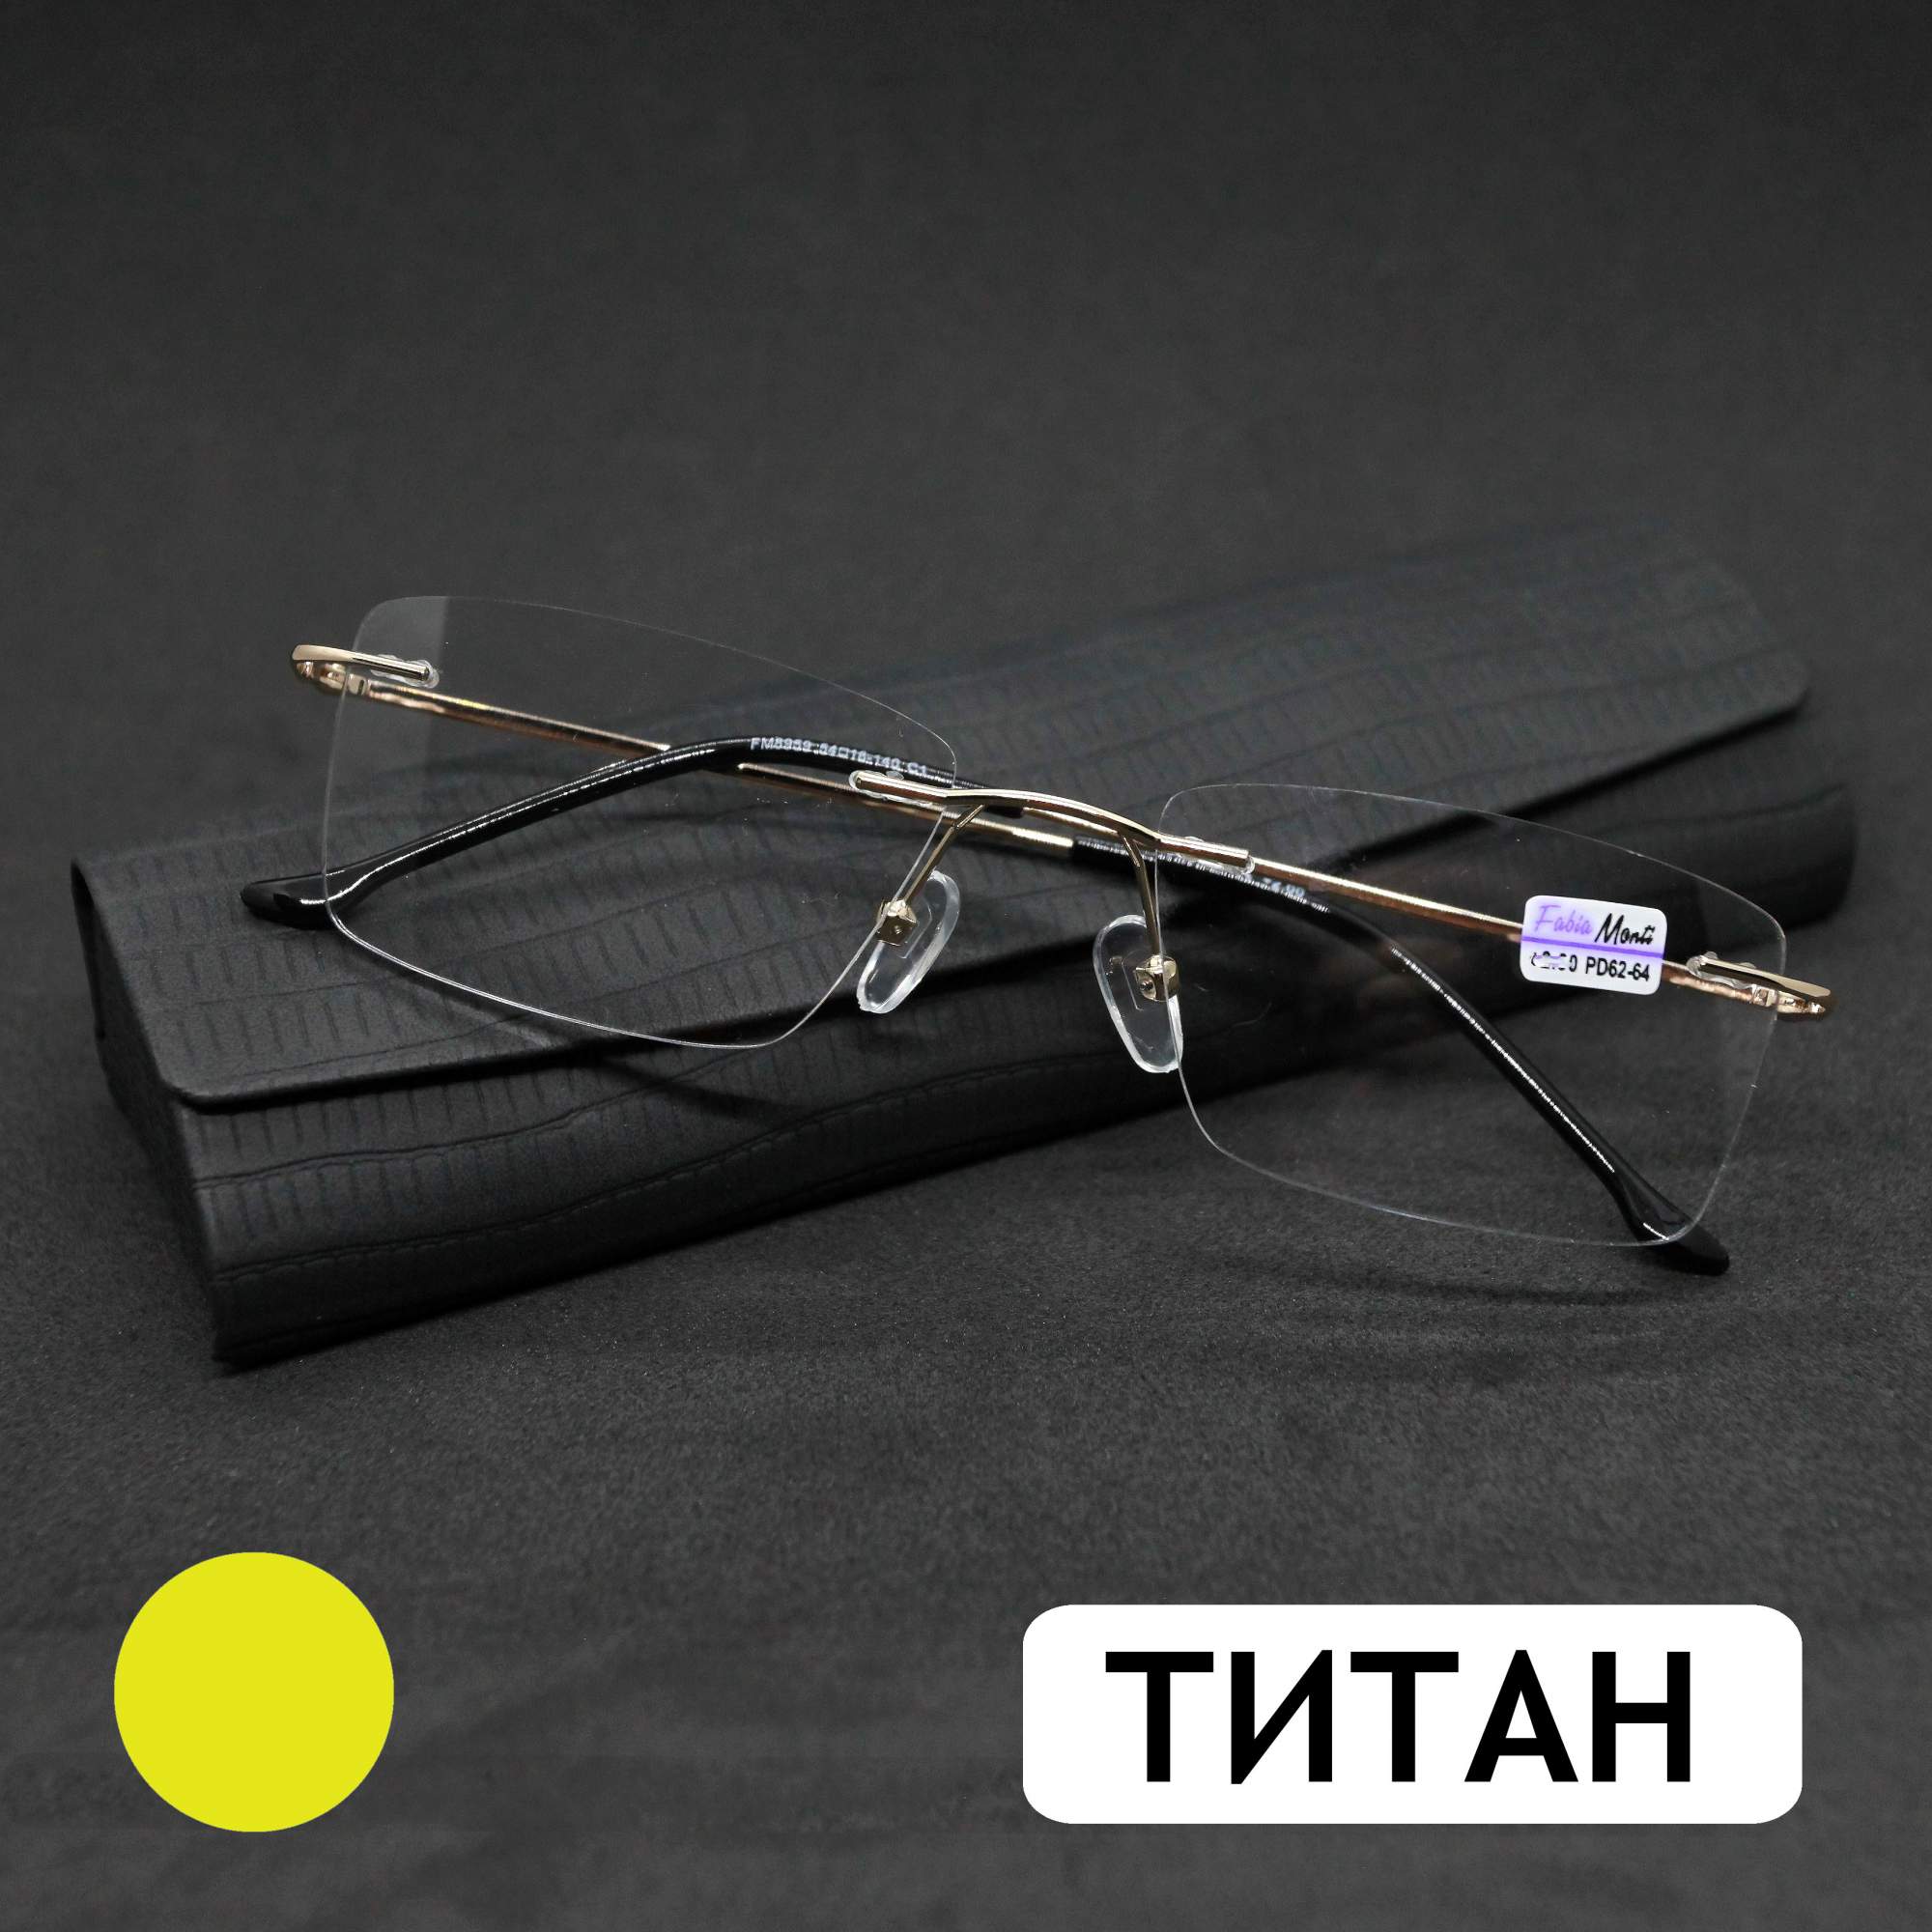 Безободковые очки FM 8959 -5.50, c футляром, оправа титан, золотые, РЦ 62-64